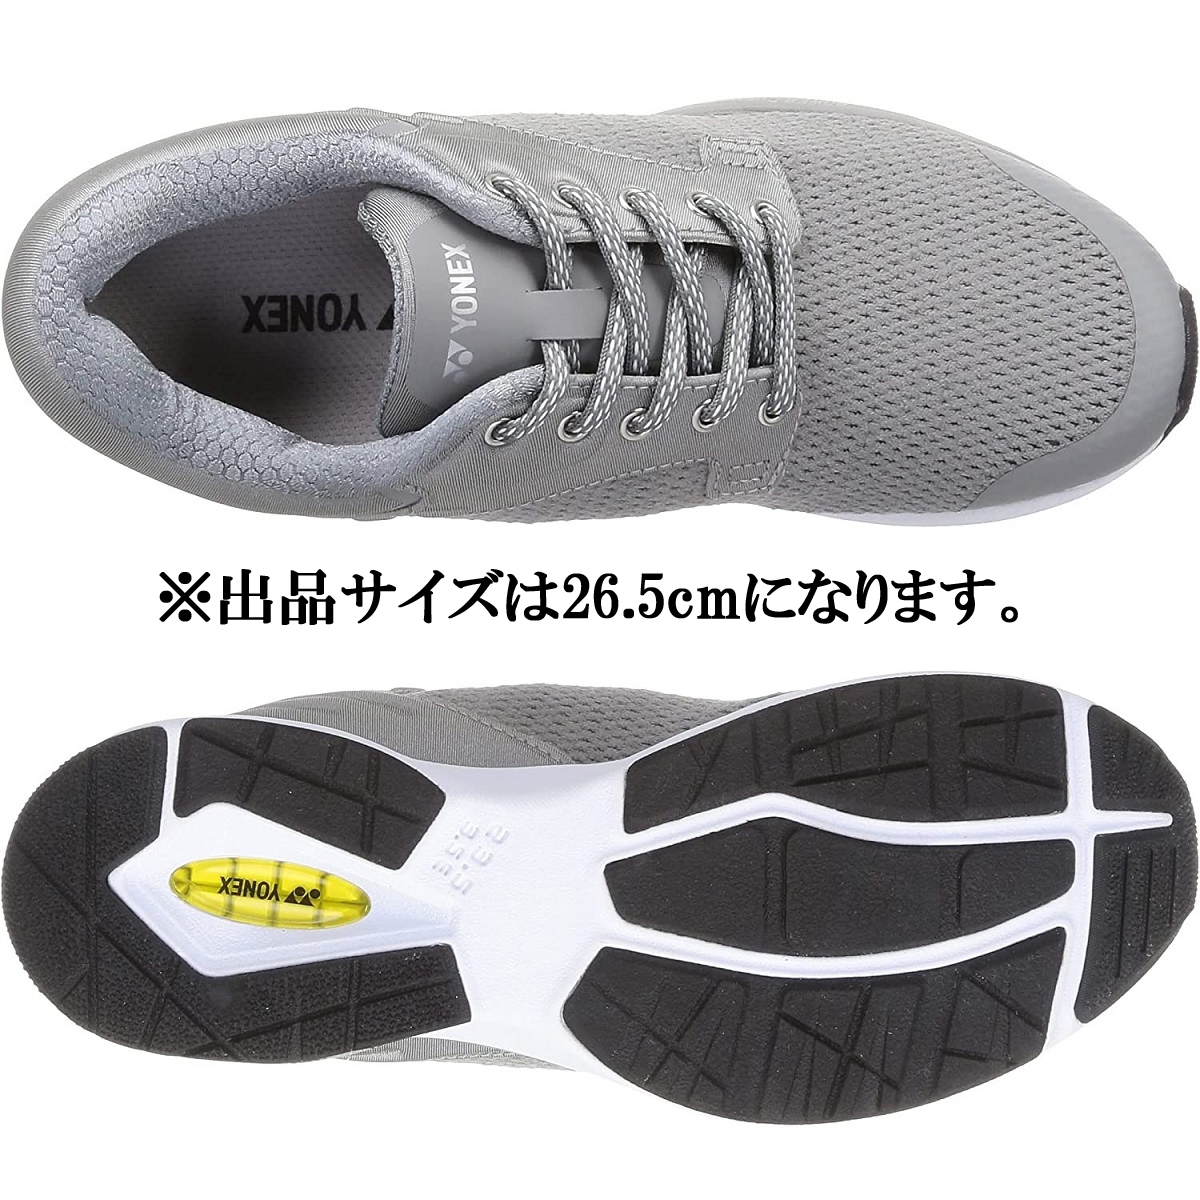 SHW116 GY 26.5cm Yonex walking jo silver g running power cushion shoes shoes 3.5E YONEX mesh light weight 